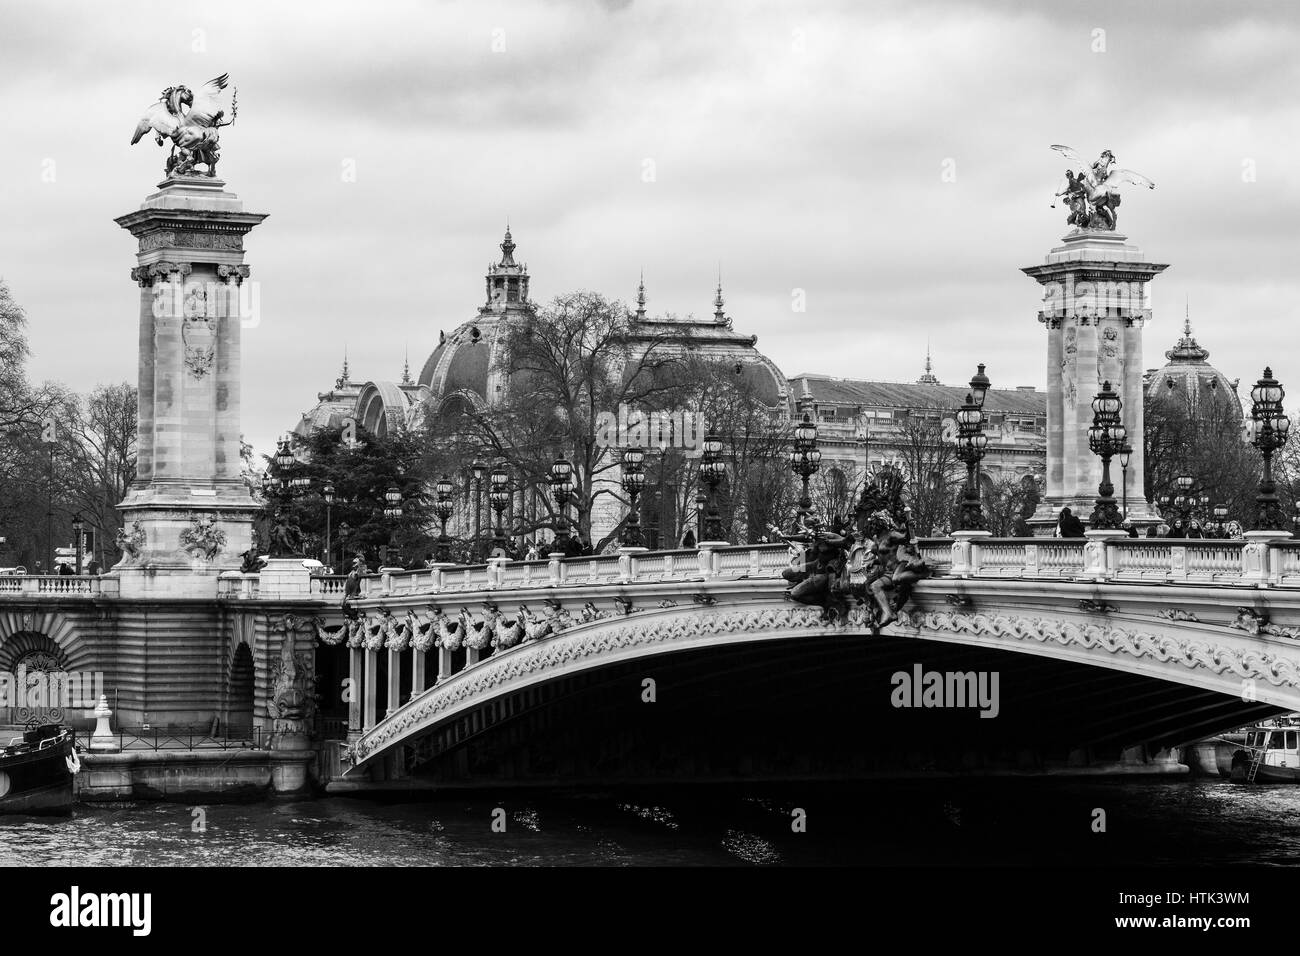 Paris art nouveau Black and White Stock Photos & Images - Alamy